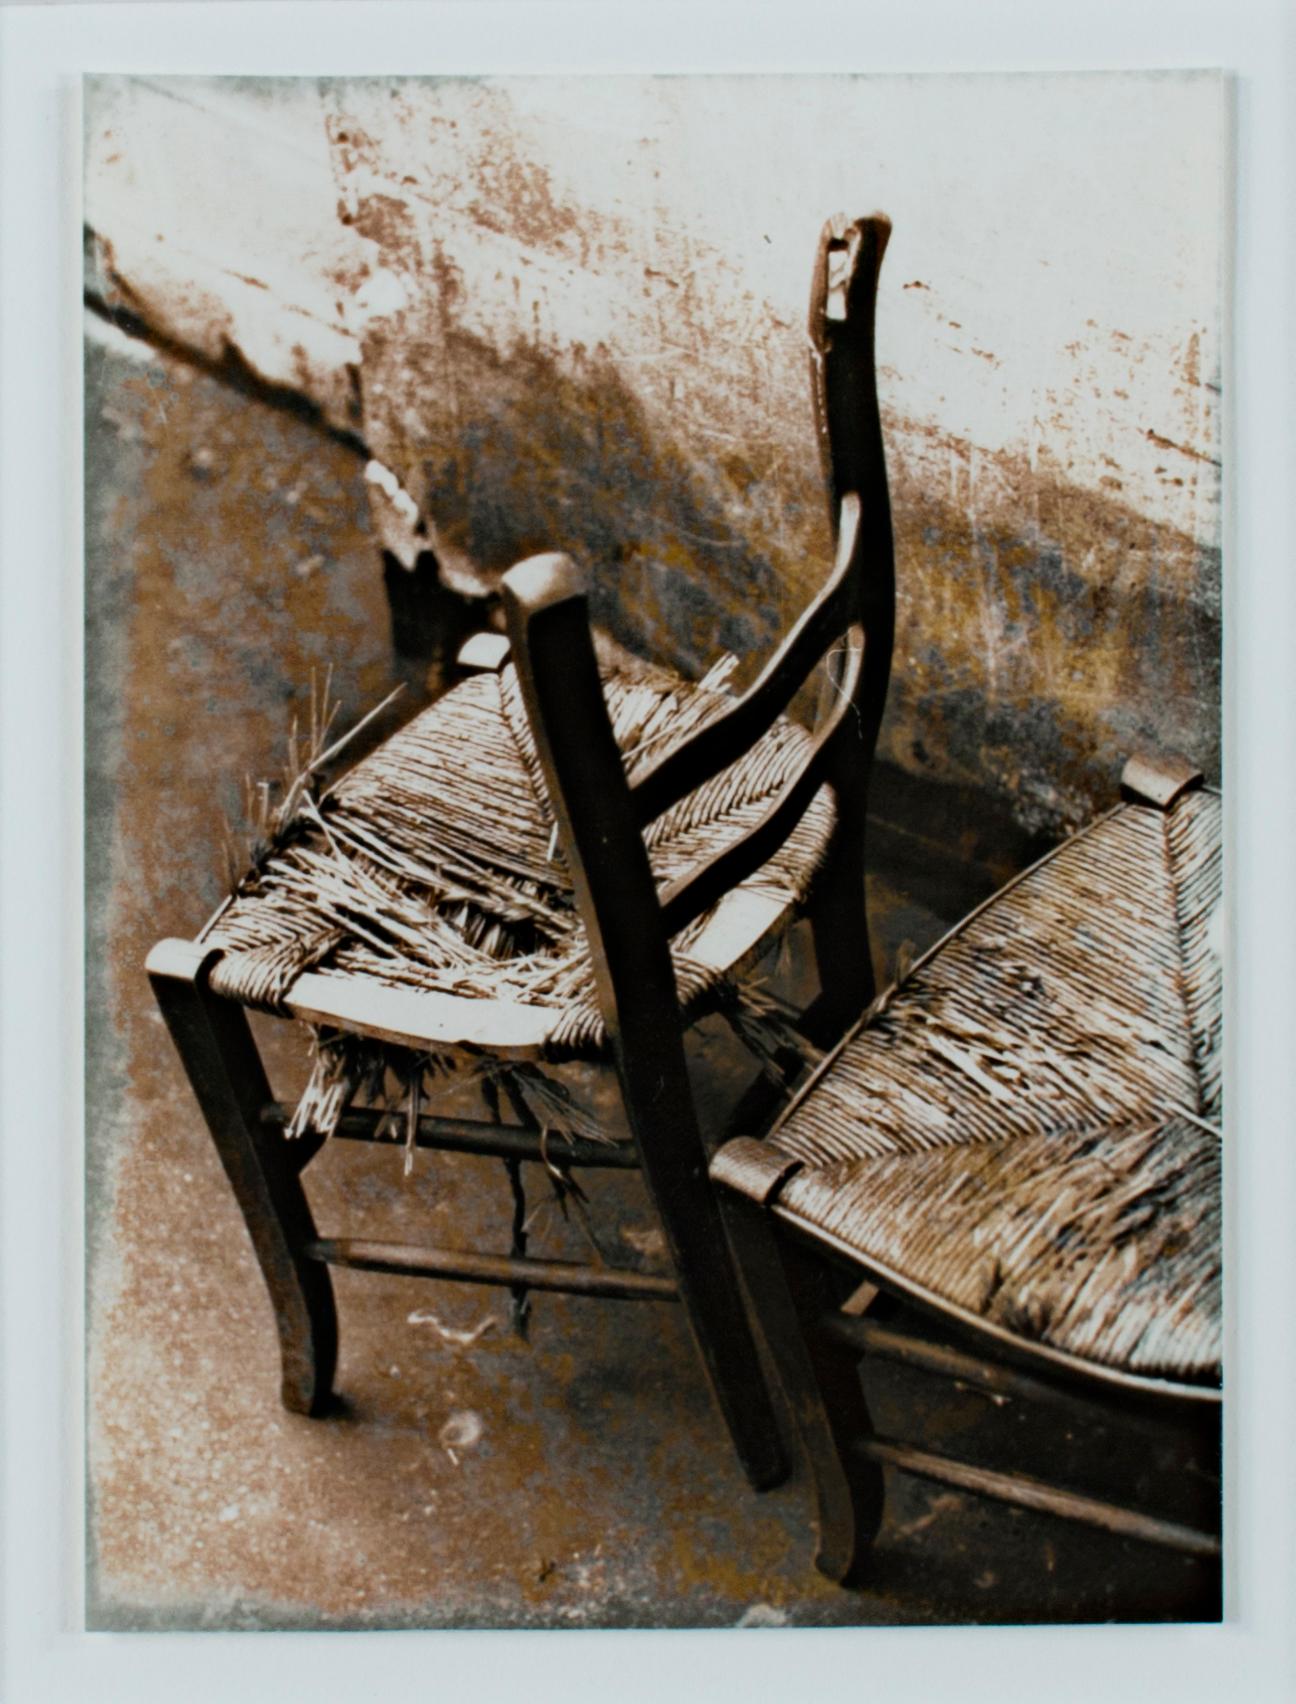 Dieses Bild von leeren, zerbrochenen Stühlen in einer verlassenen Gasse erinnert an das Werk von Eugene Atget, der zu Beginn des 20. Jahrhunderts über einen Zeitraum von 30 Jahren die Straßen von Paris festhielt. Sein Werk wurde von den Surrealisten